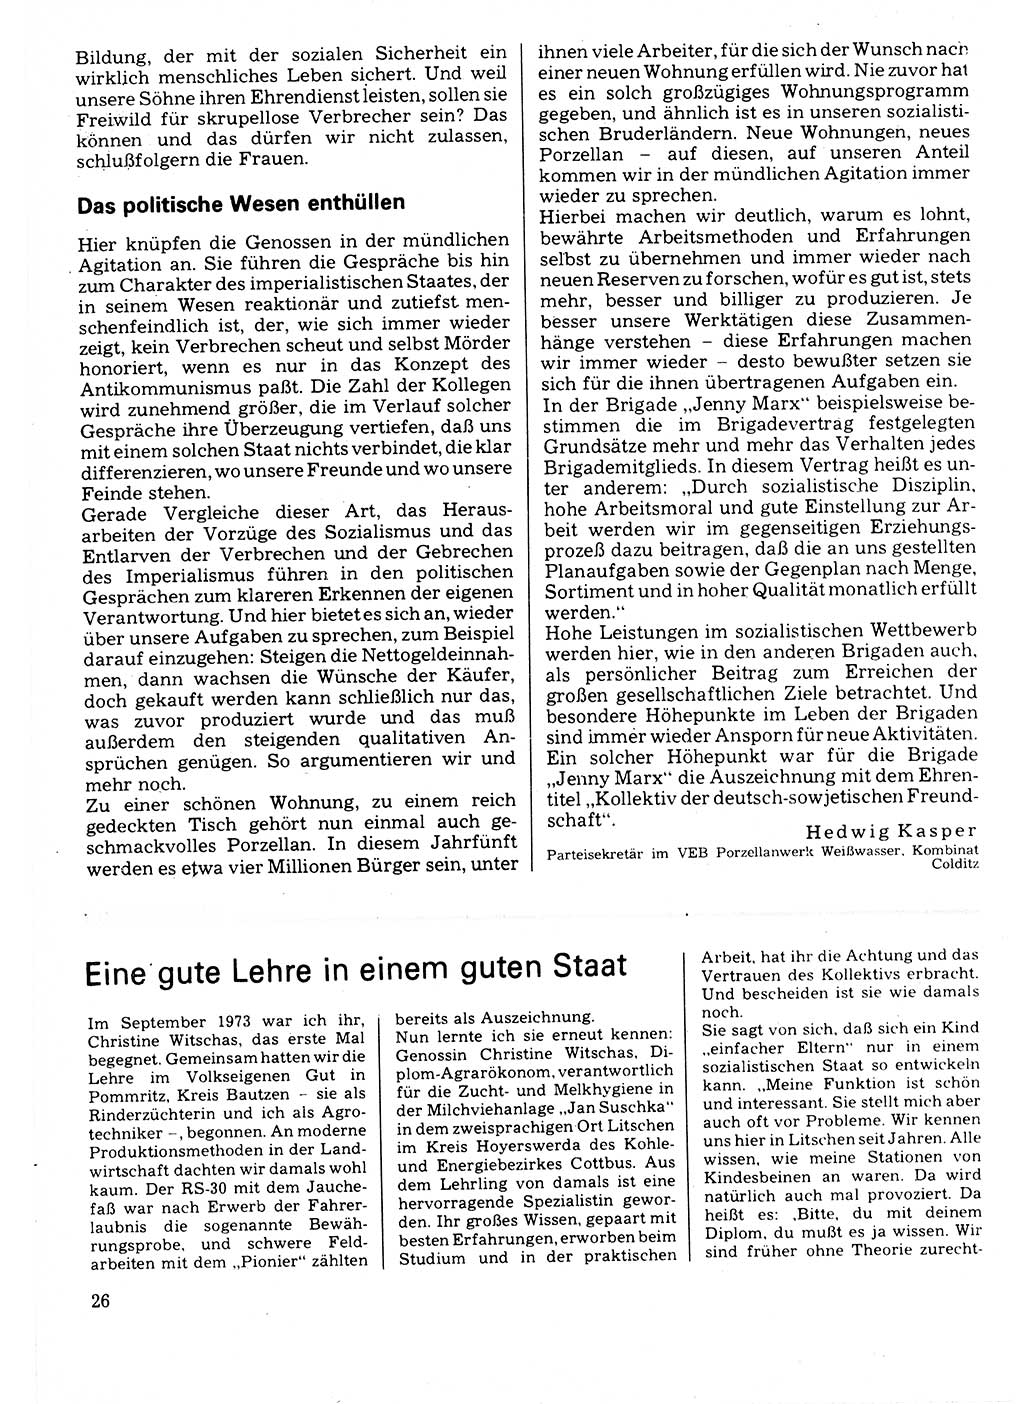 Neuer Weg (NW), Organ des Zentralkomitees (ZK) der SED (Sozialistische Einheitspartei Deutschlands) für Fragen des Parteilebens, 32. Jahrgang [Deutsche Demokratische Republik (DDR)] 1977, Seite 26 (NW ZK SED DDR 1977, S. 26)